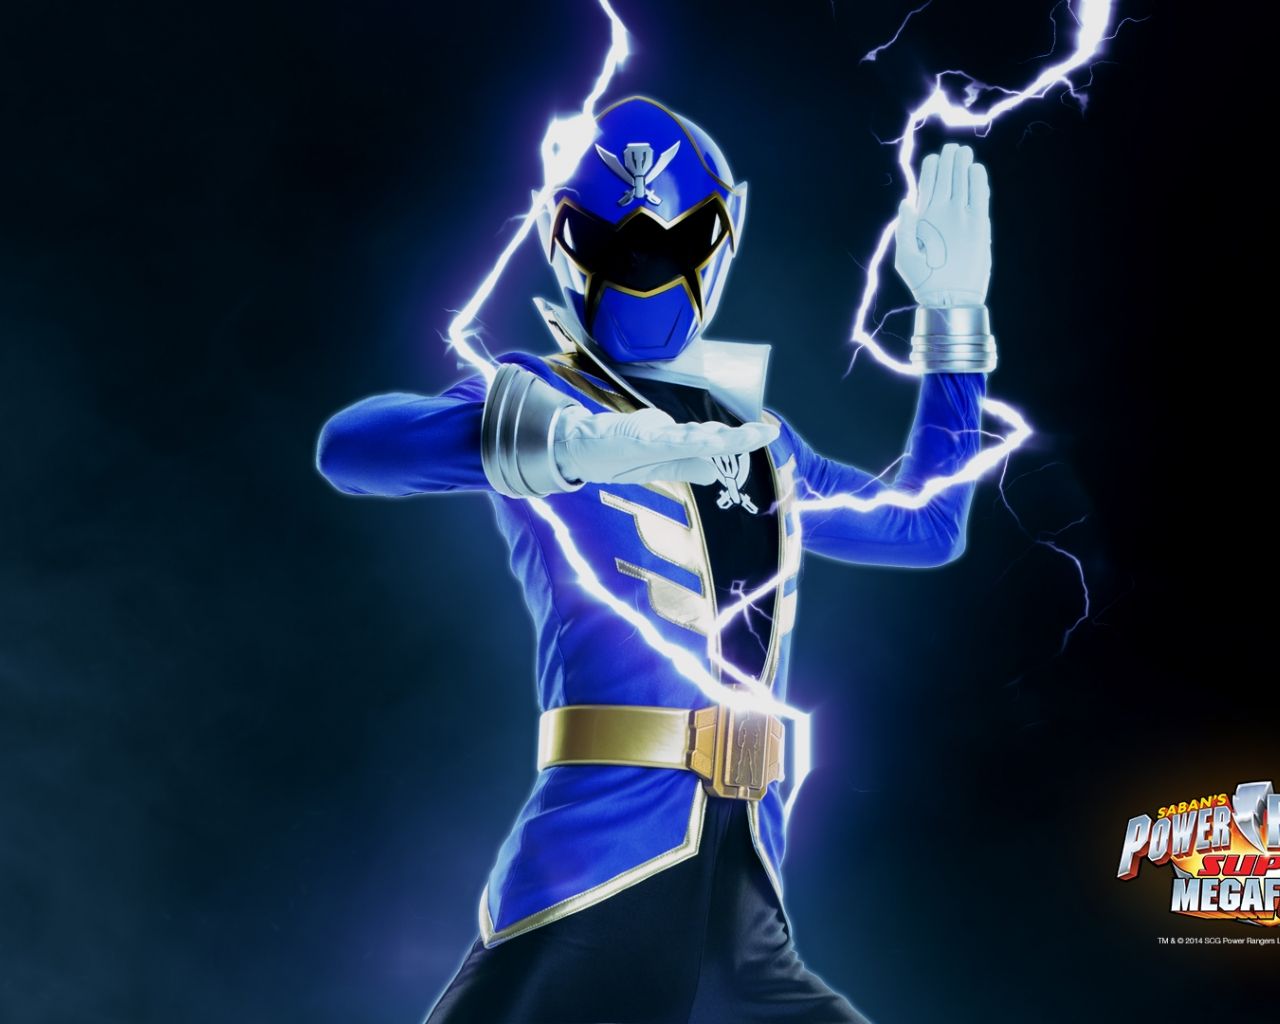 Blue Power Ranger Wallpaper image for Desktop, Mobile